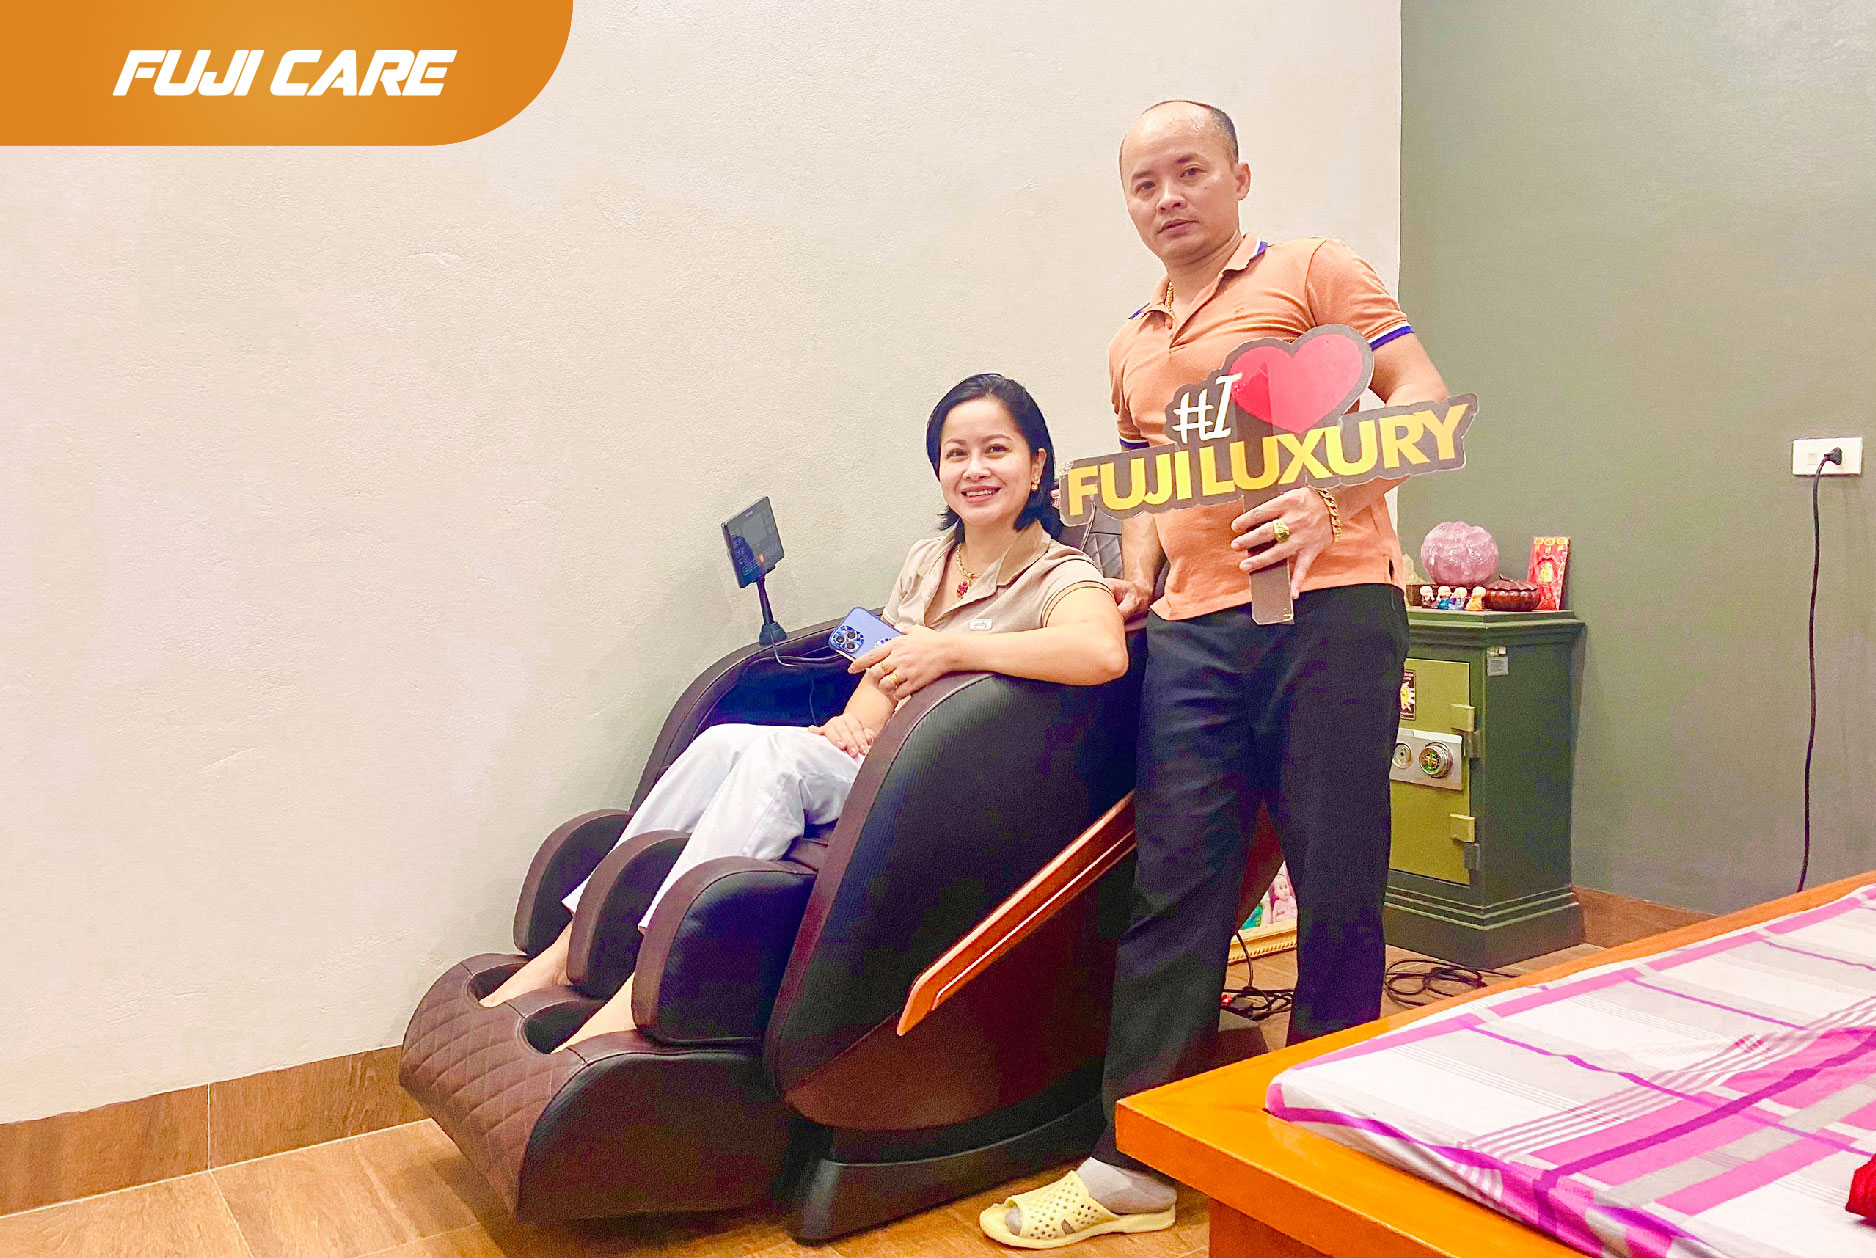 Ghế massage Fuji Care được nhiều khách hàng trên cả nước tin dùng, yên tâm về cả chất lượng sản phẩm và dịch vụ.